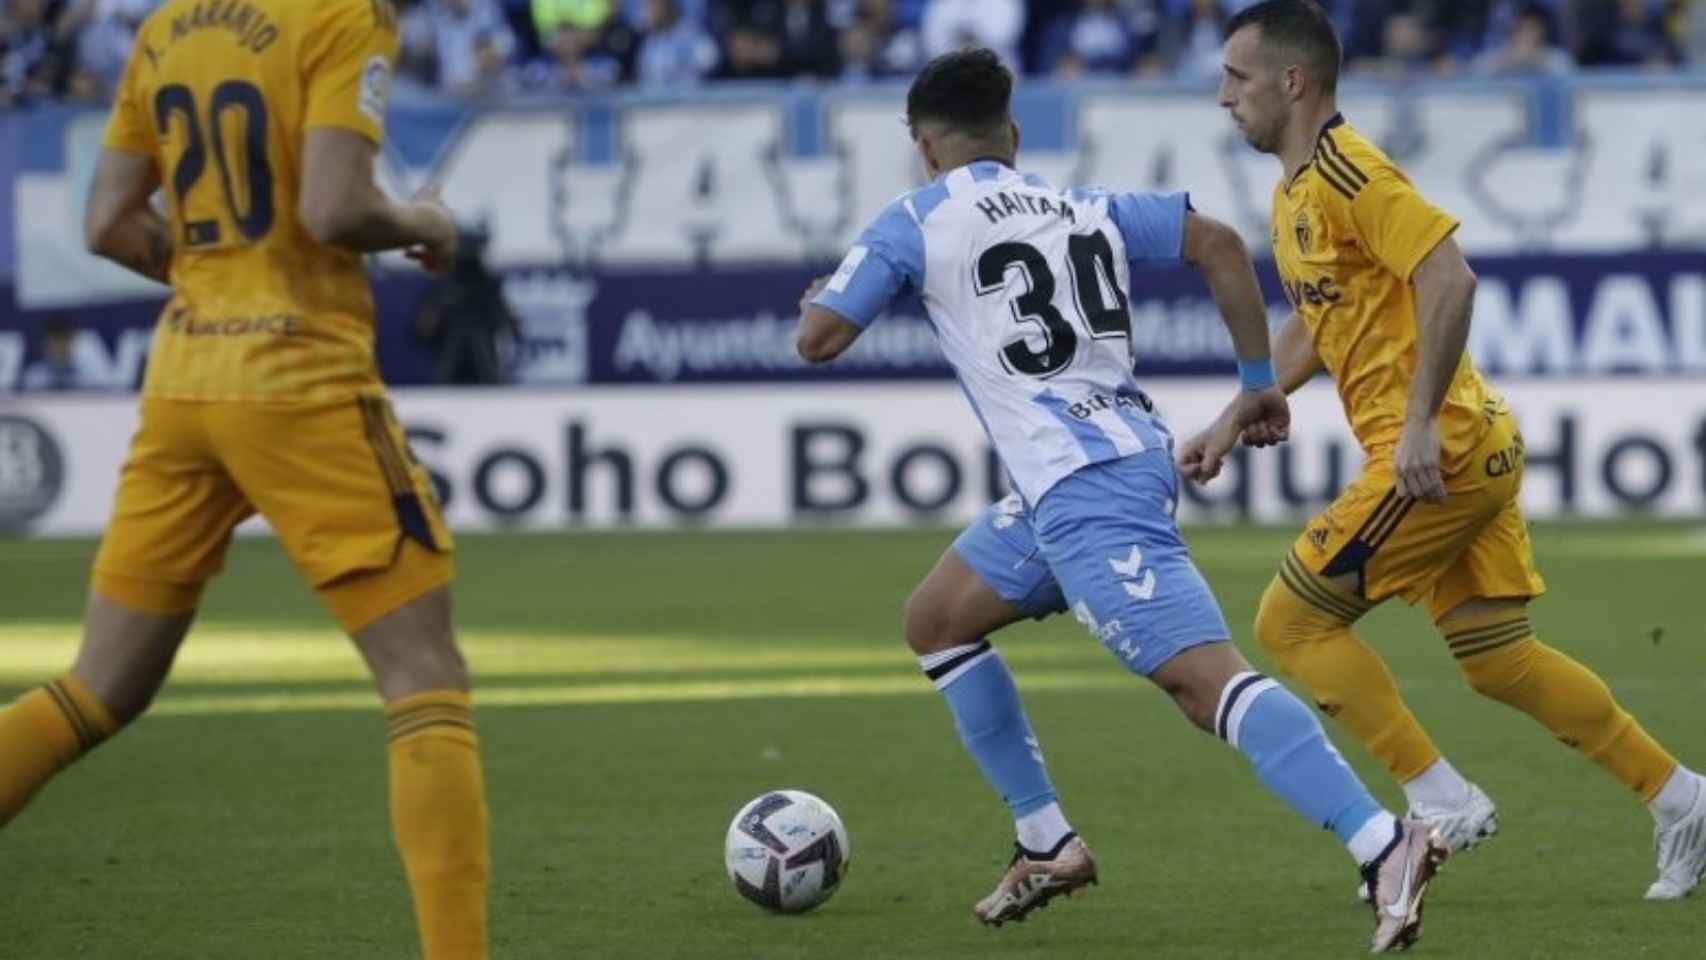 Haitam durante el partido Málaga vs. Ponferradina